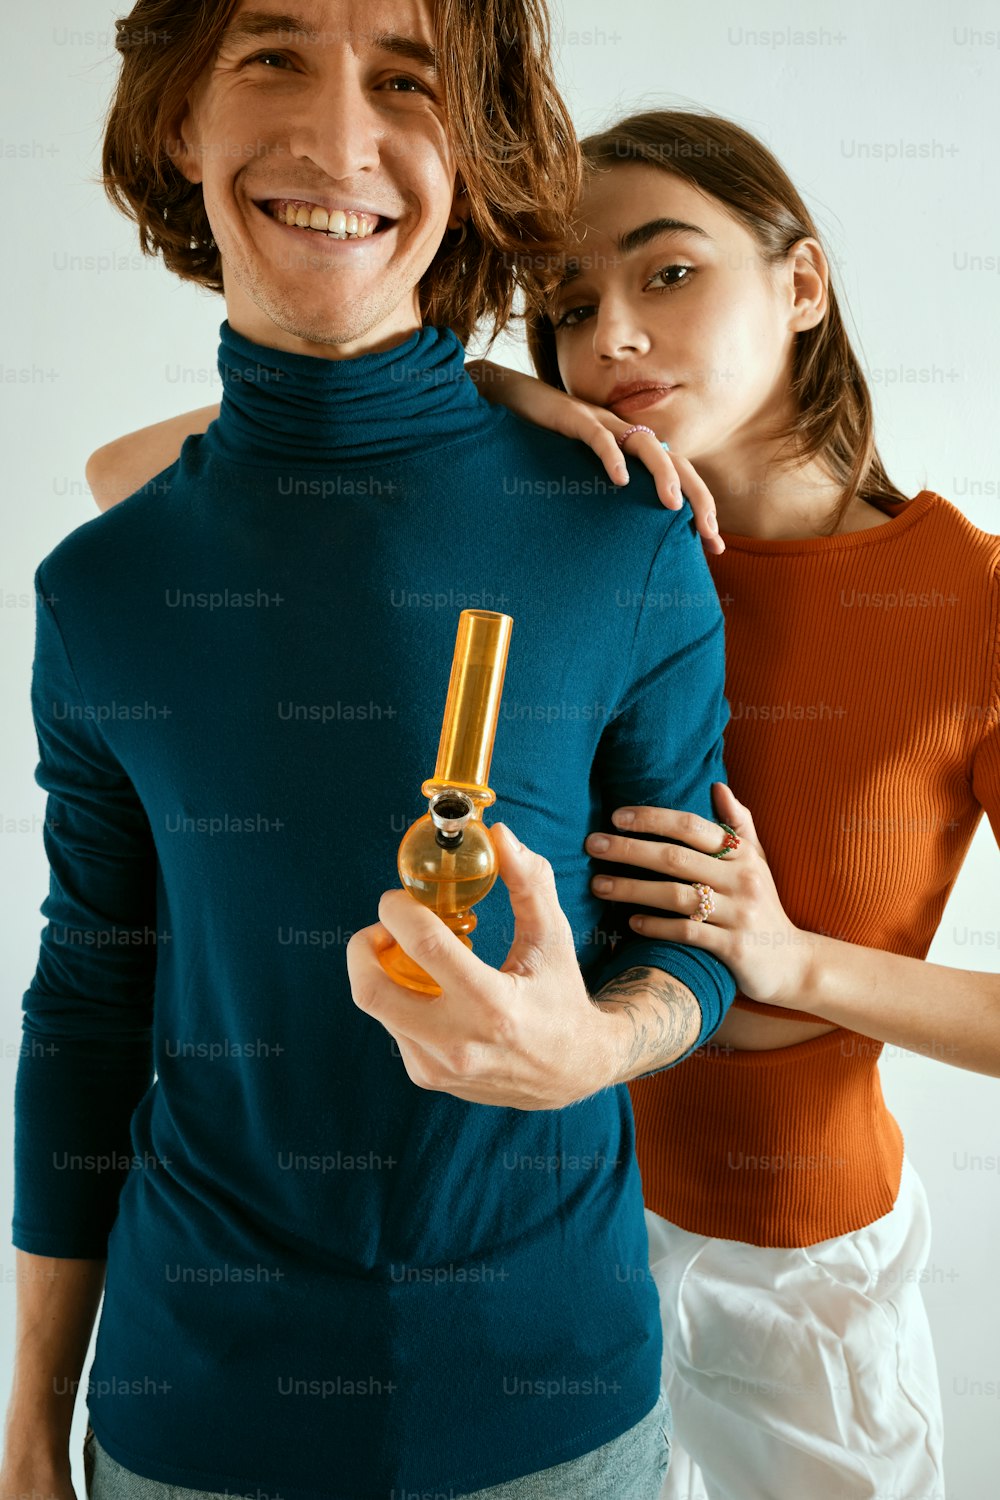 Un hombre sosteniendo una botella de perfume junto a una mujer